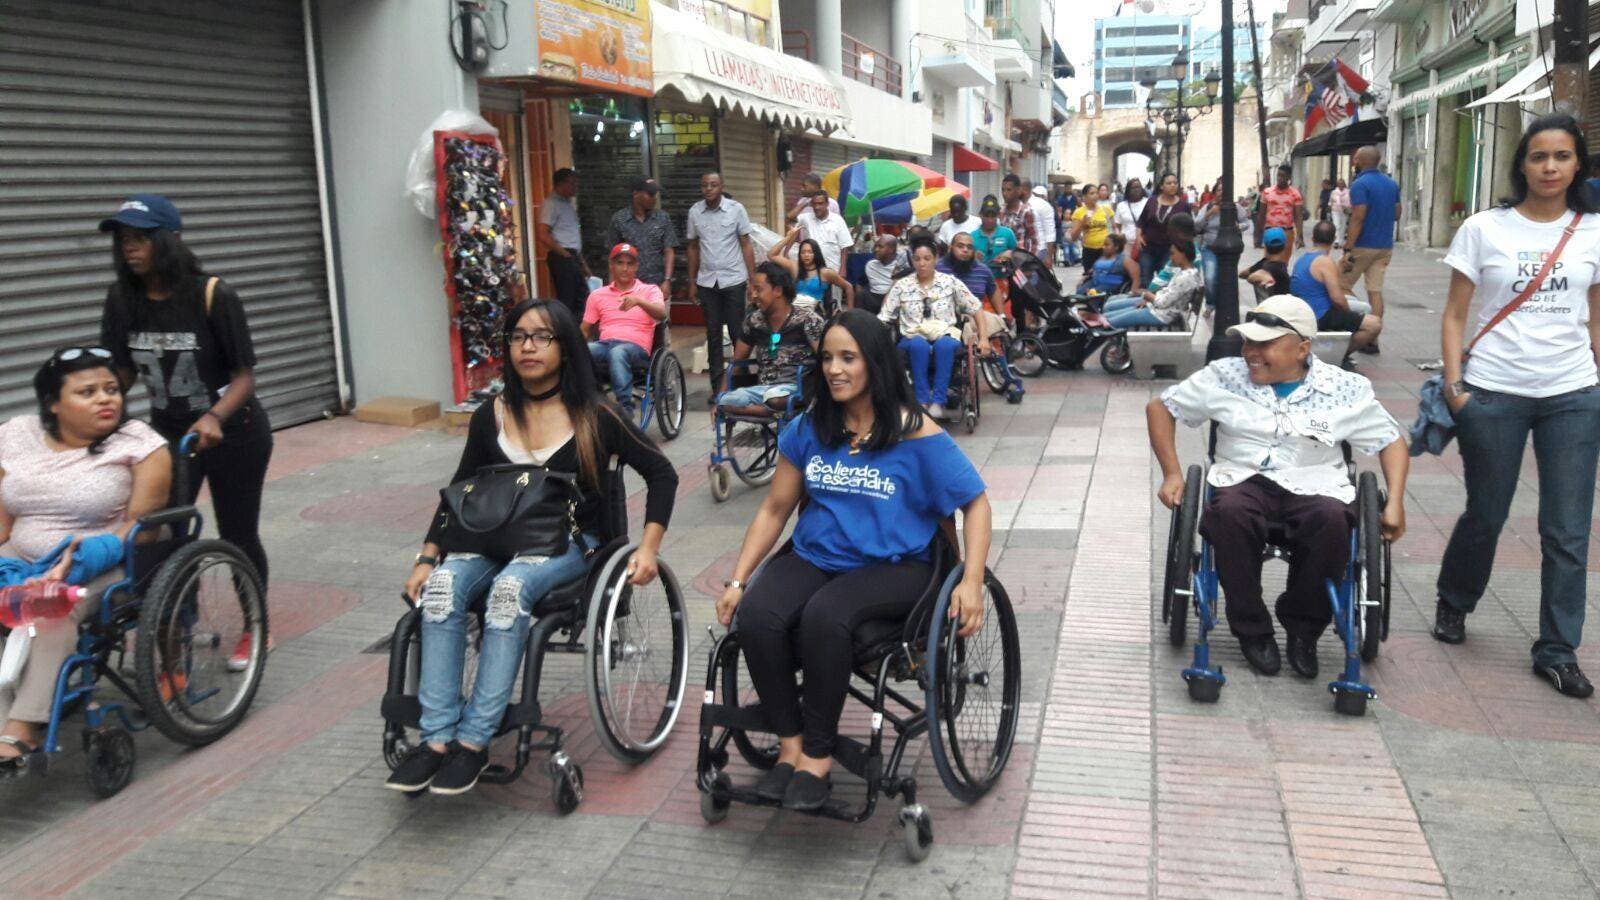 Hoy se conmemora el Día Internacional de las Personas con Discapacidad